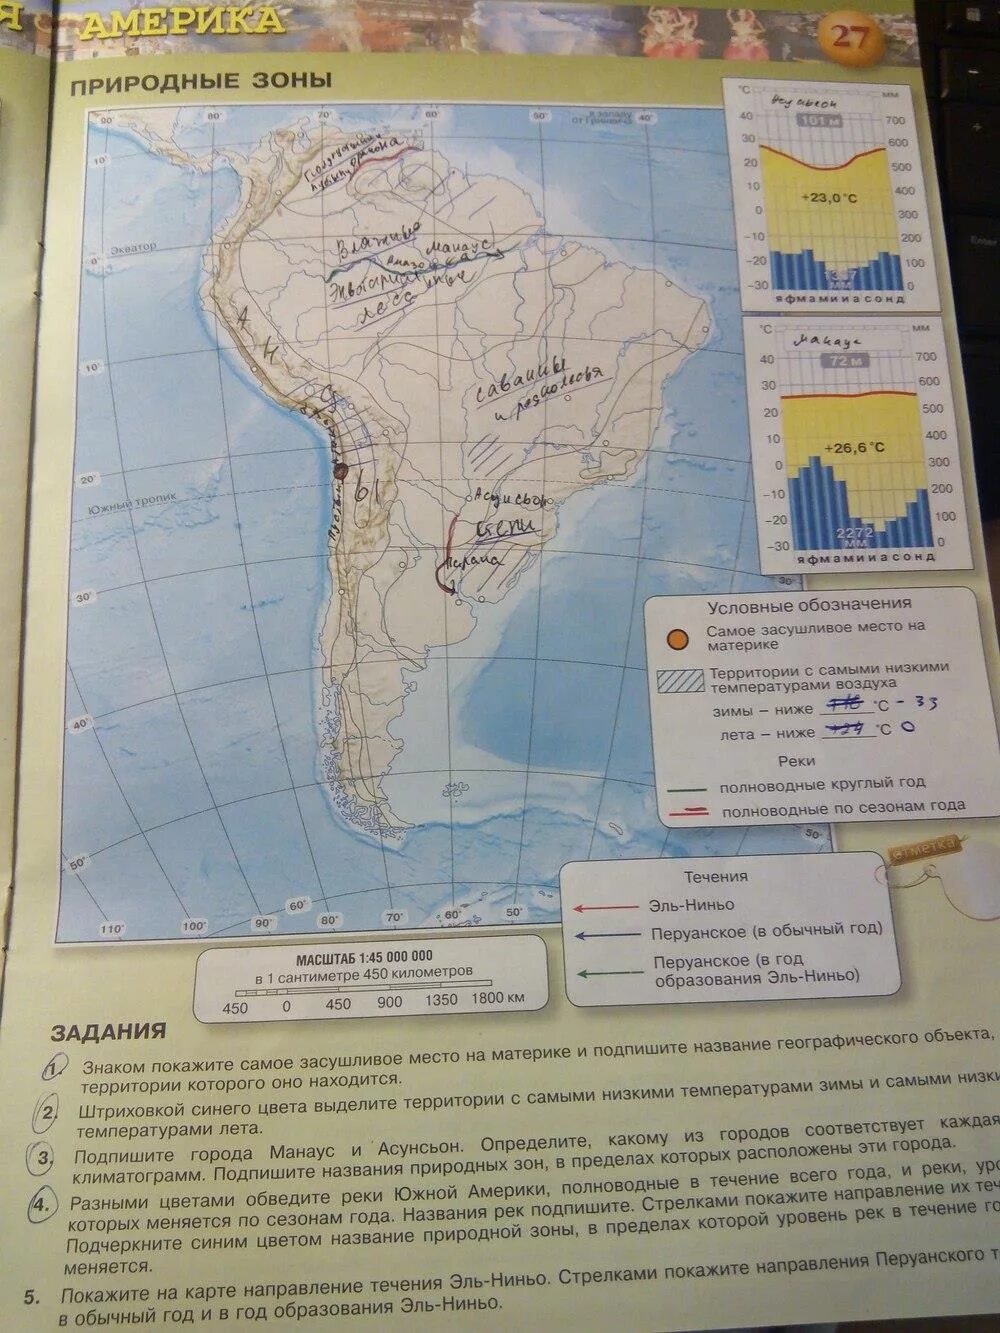 География 7 класс контурные карты стр 27. Карта Южной Америки 7 класс география. Гдз по географии 7 класс карта. Карта по географии 7 класс Южная Америка.